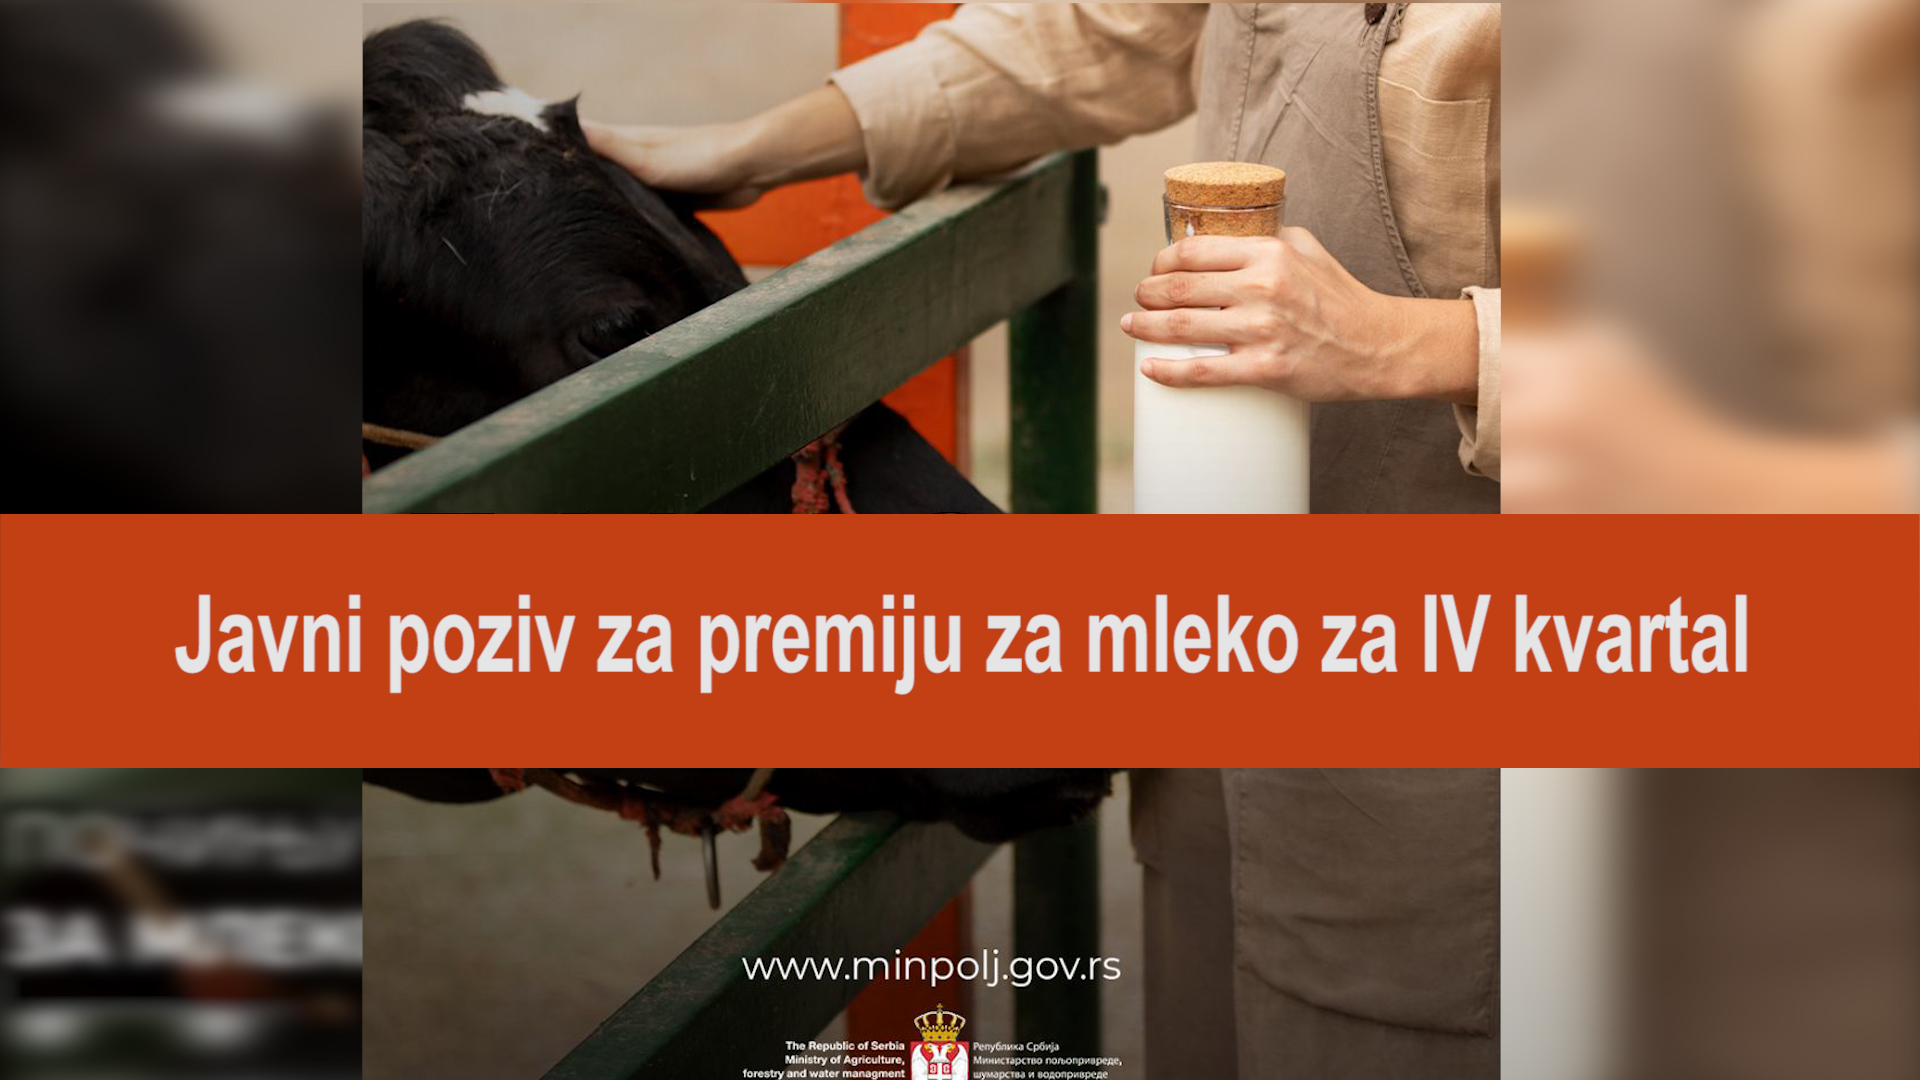 Poziv za premiju za mleko za IV kvartal traje do 15. februara